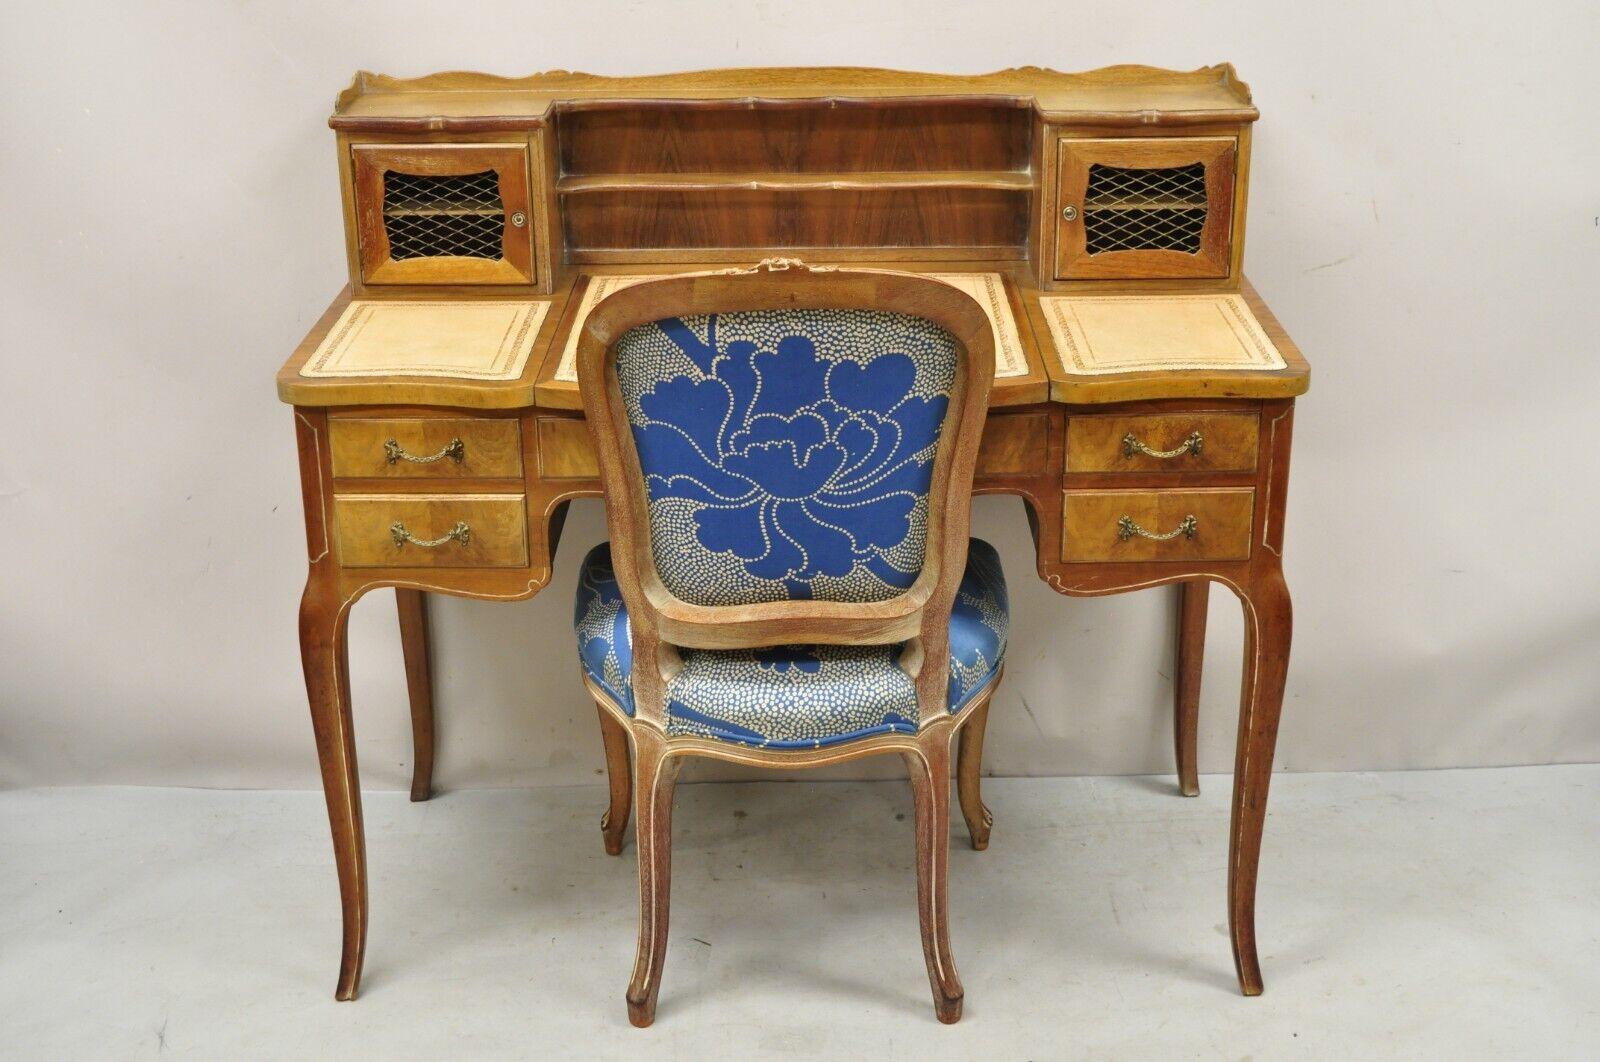 Vintage French Provincial Louis XV Style vanity desk avec dessus en cuir, miroir et chaise latérale. Cet article est caractérisé par un fini lavé à la chaux, des accents floraux sculptés, un tissu à imprimé floral bleu, un couvercle rabattable avec